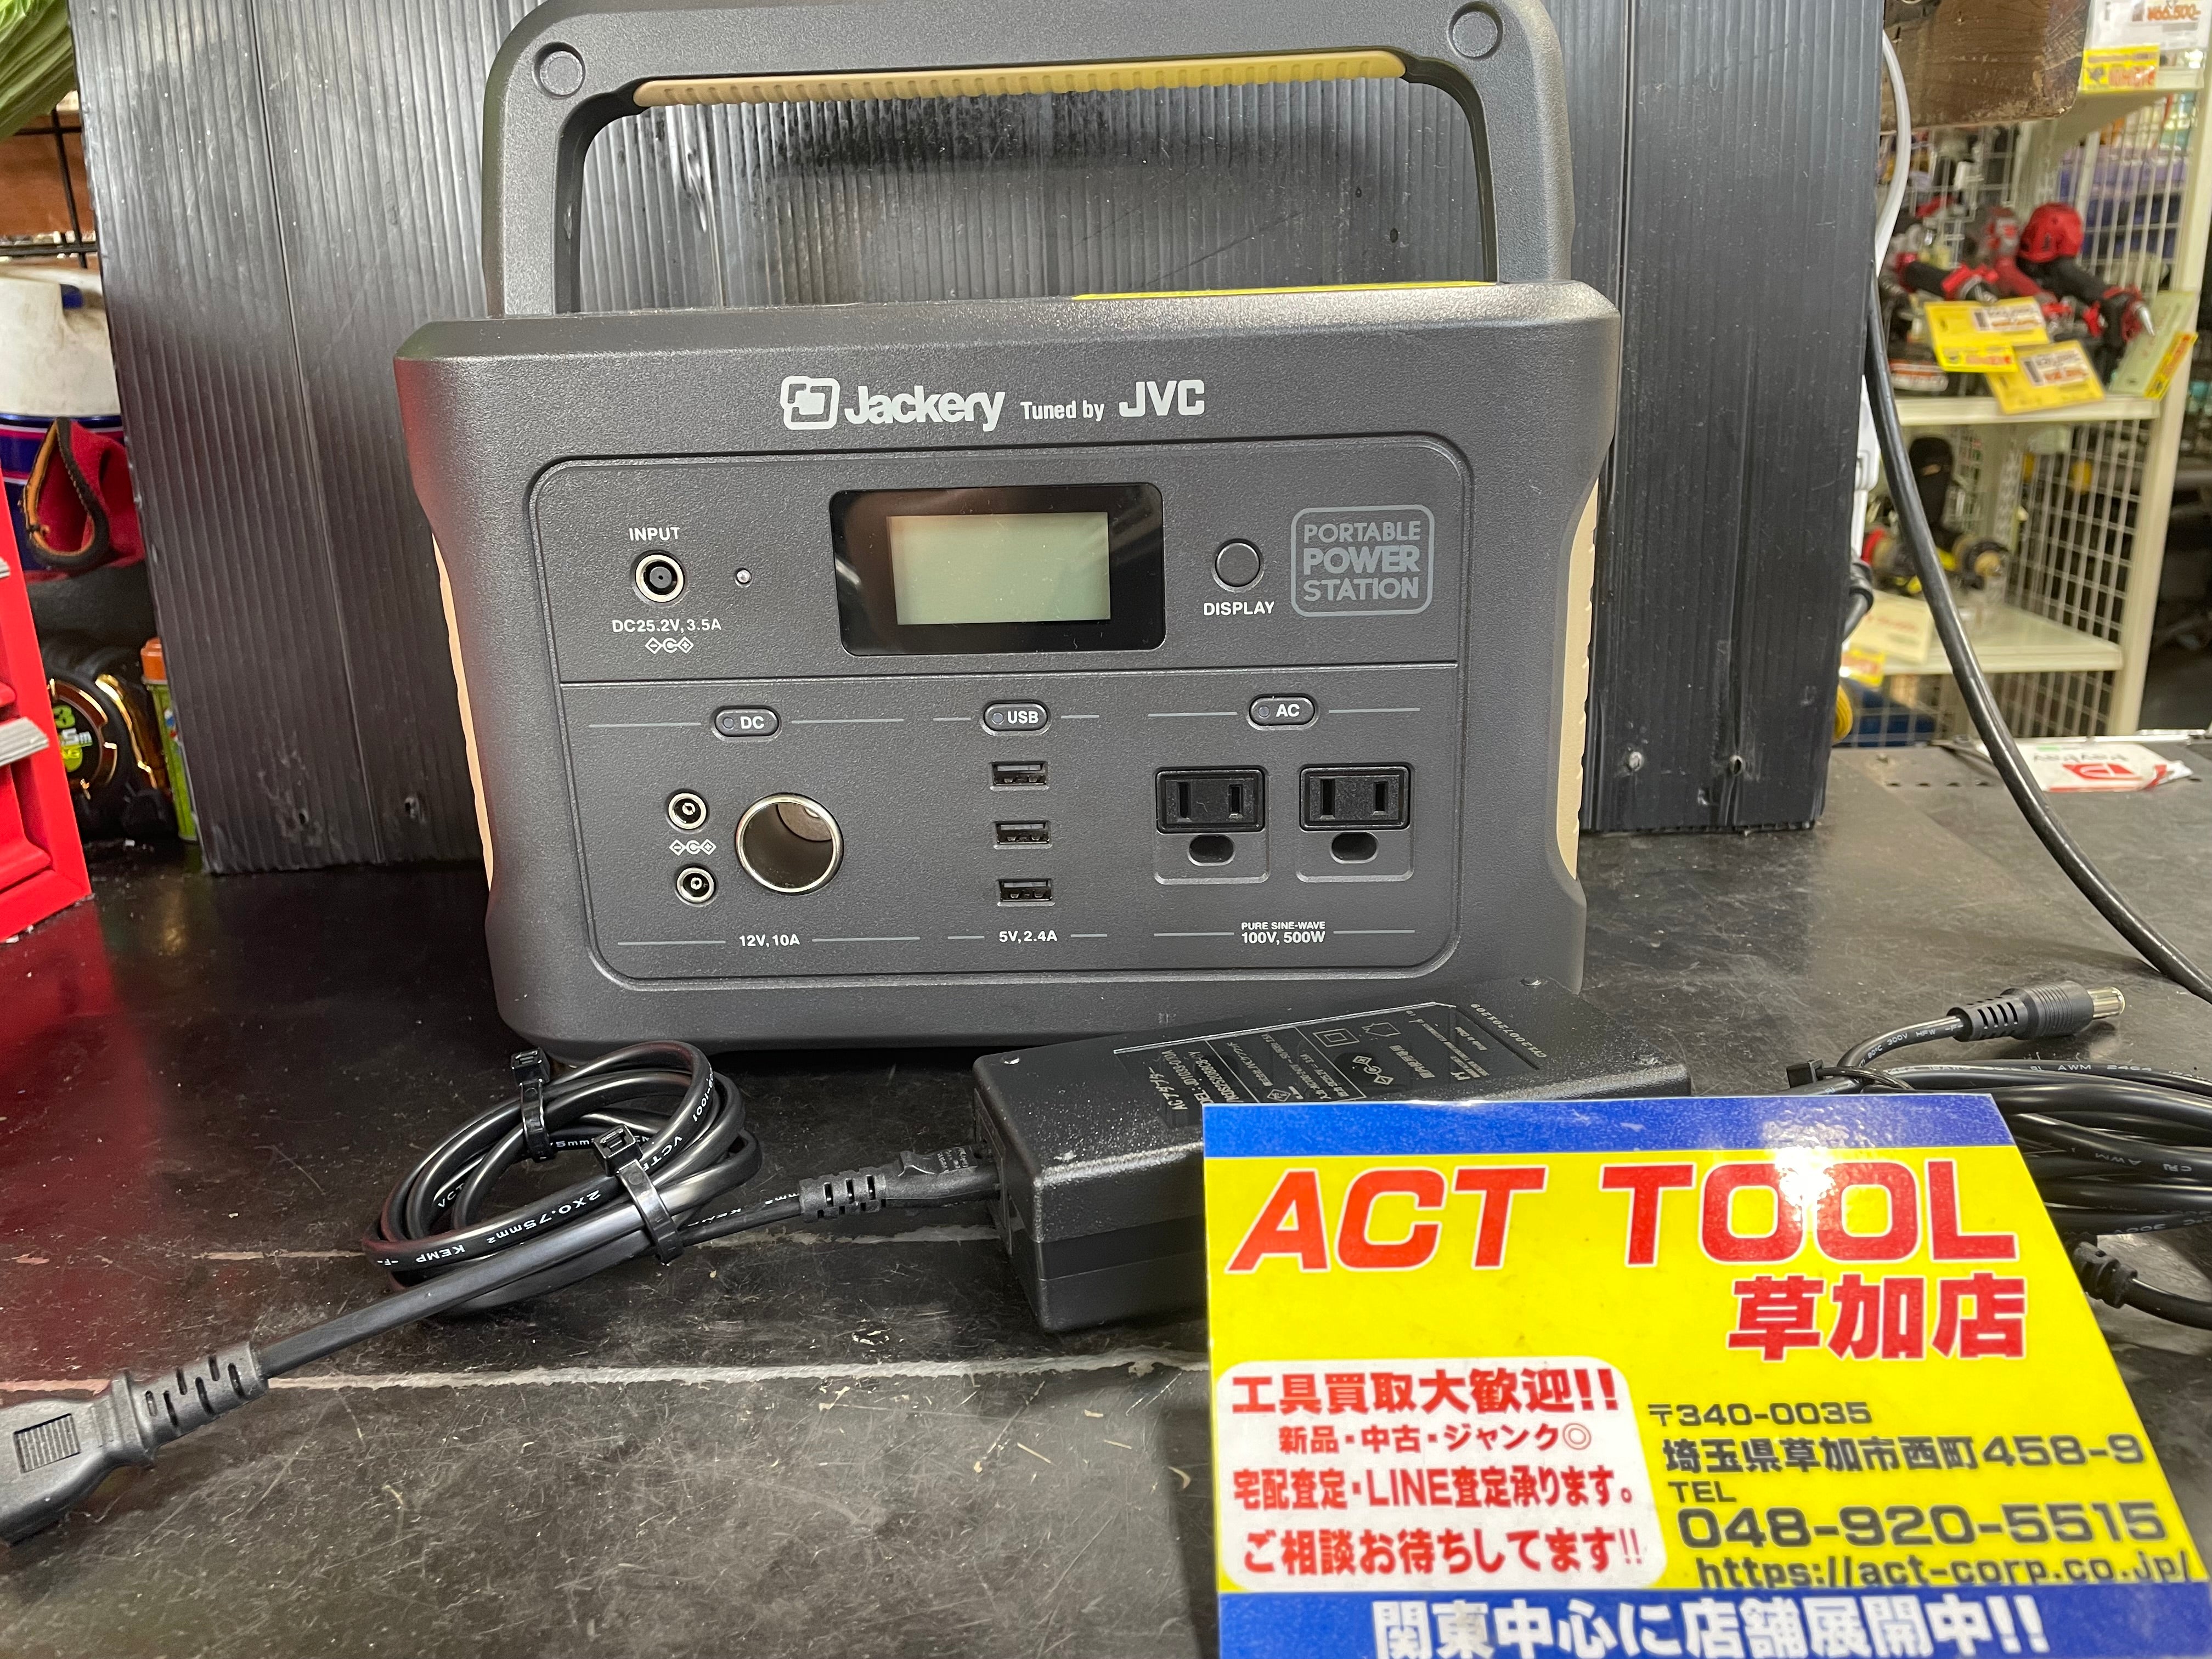 JVC Jackery ポータブル電源 BN-RB62-C